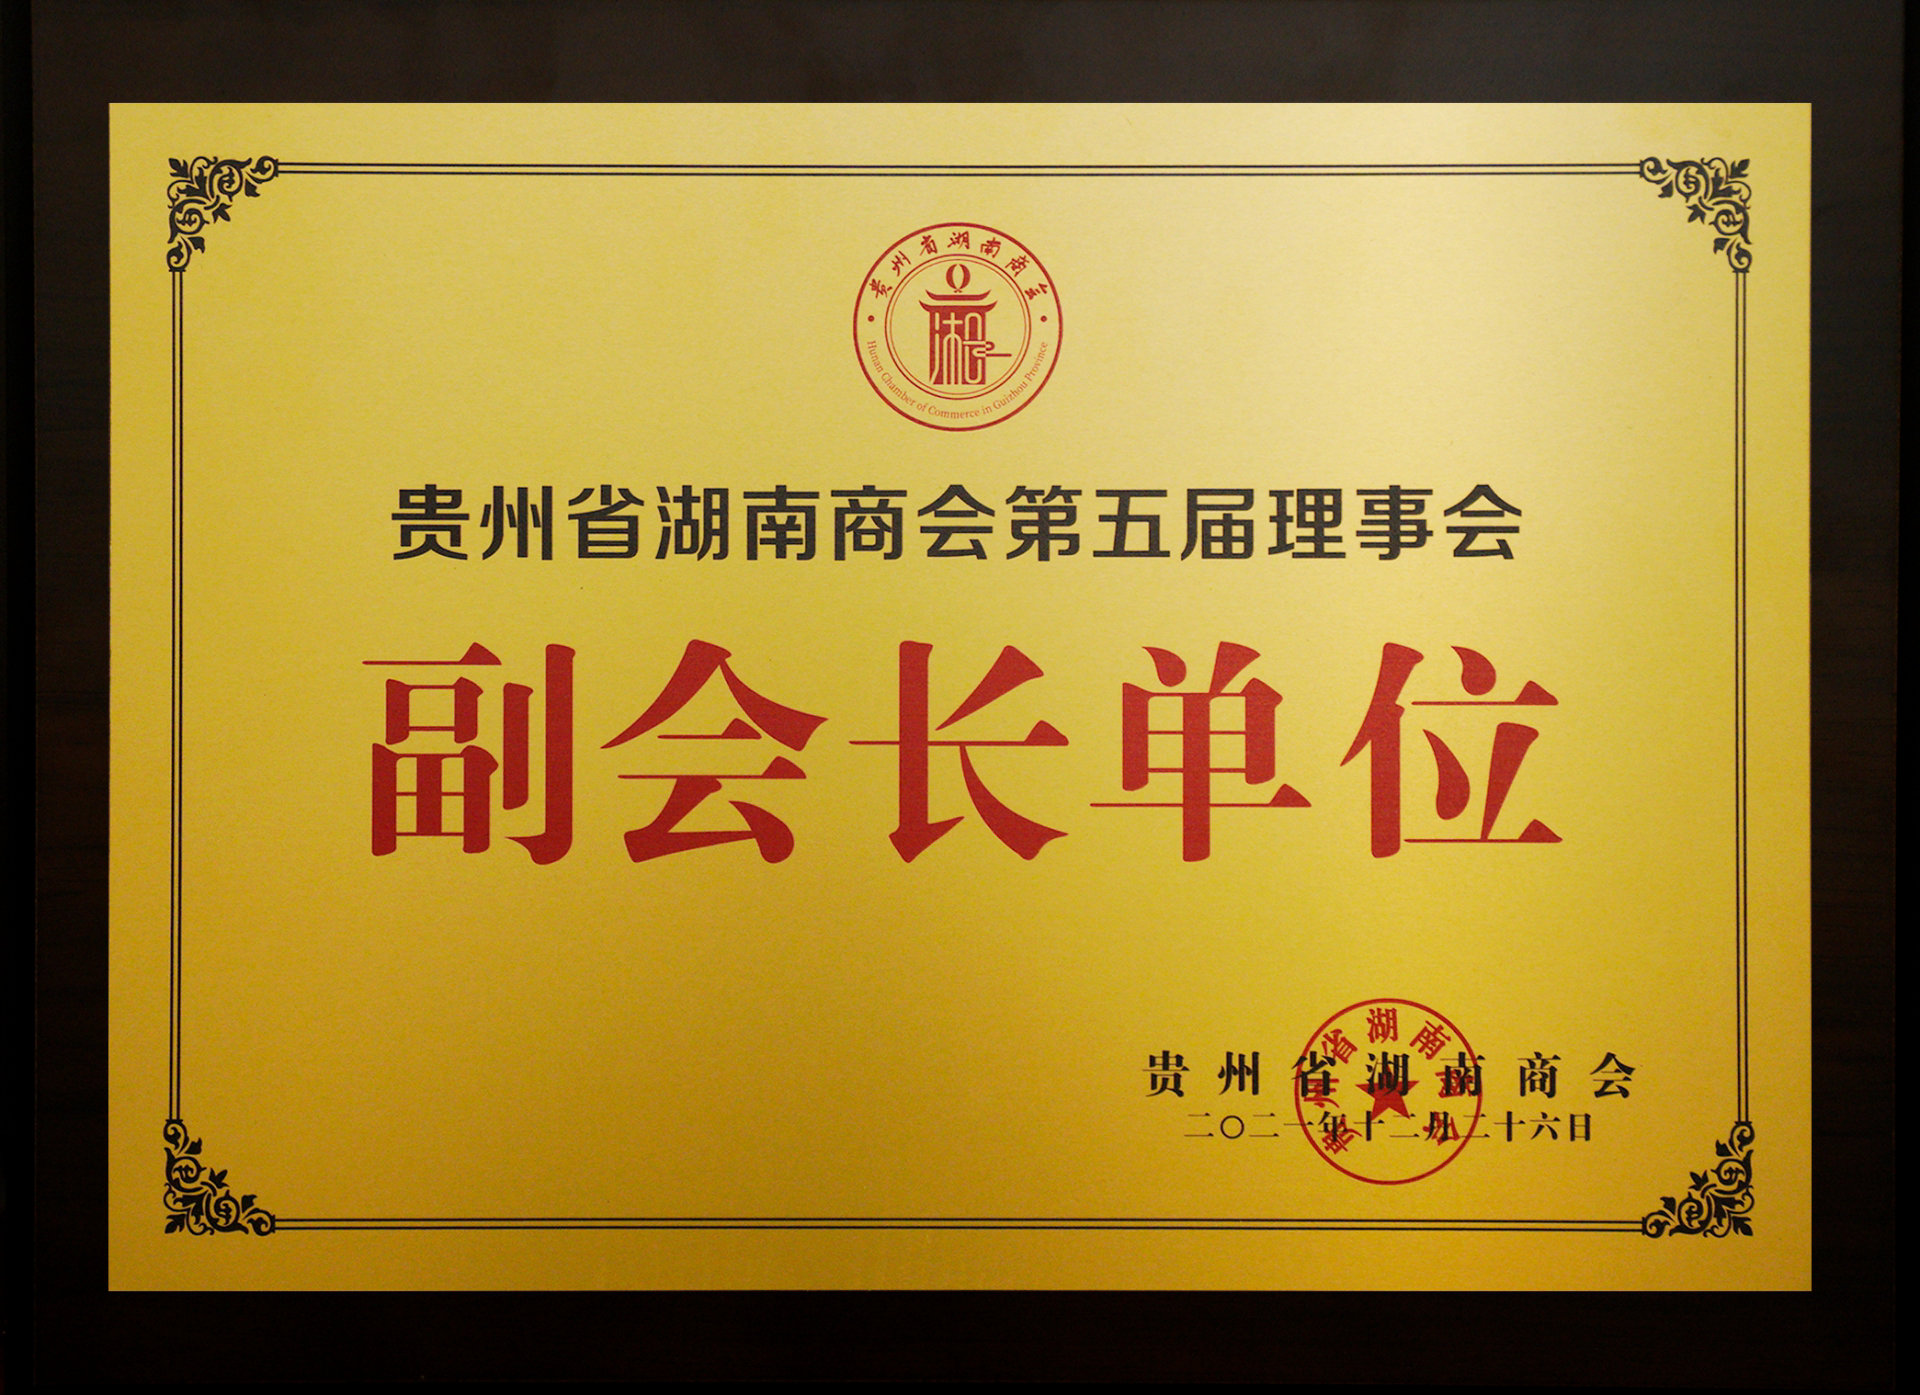 貴州省湖南商會第五屆理事會副會長單位